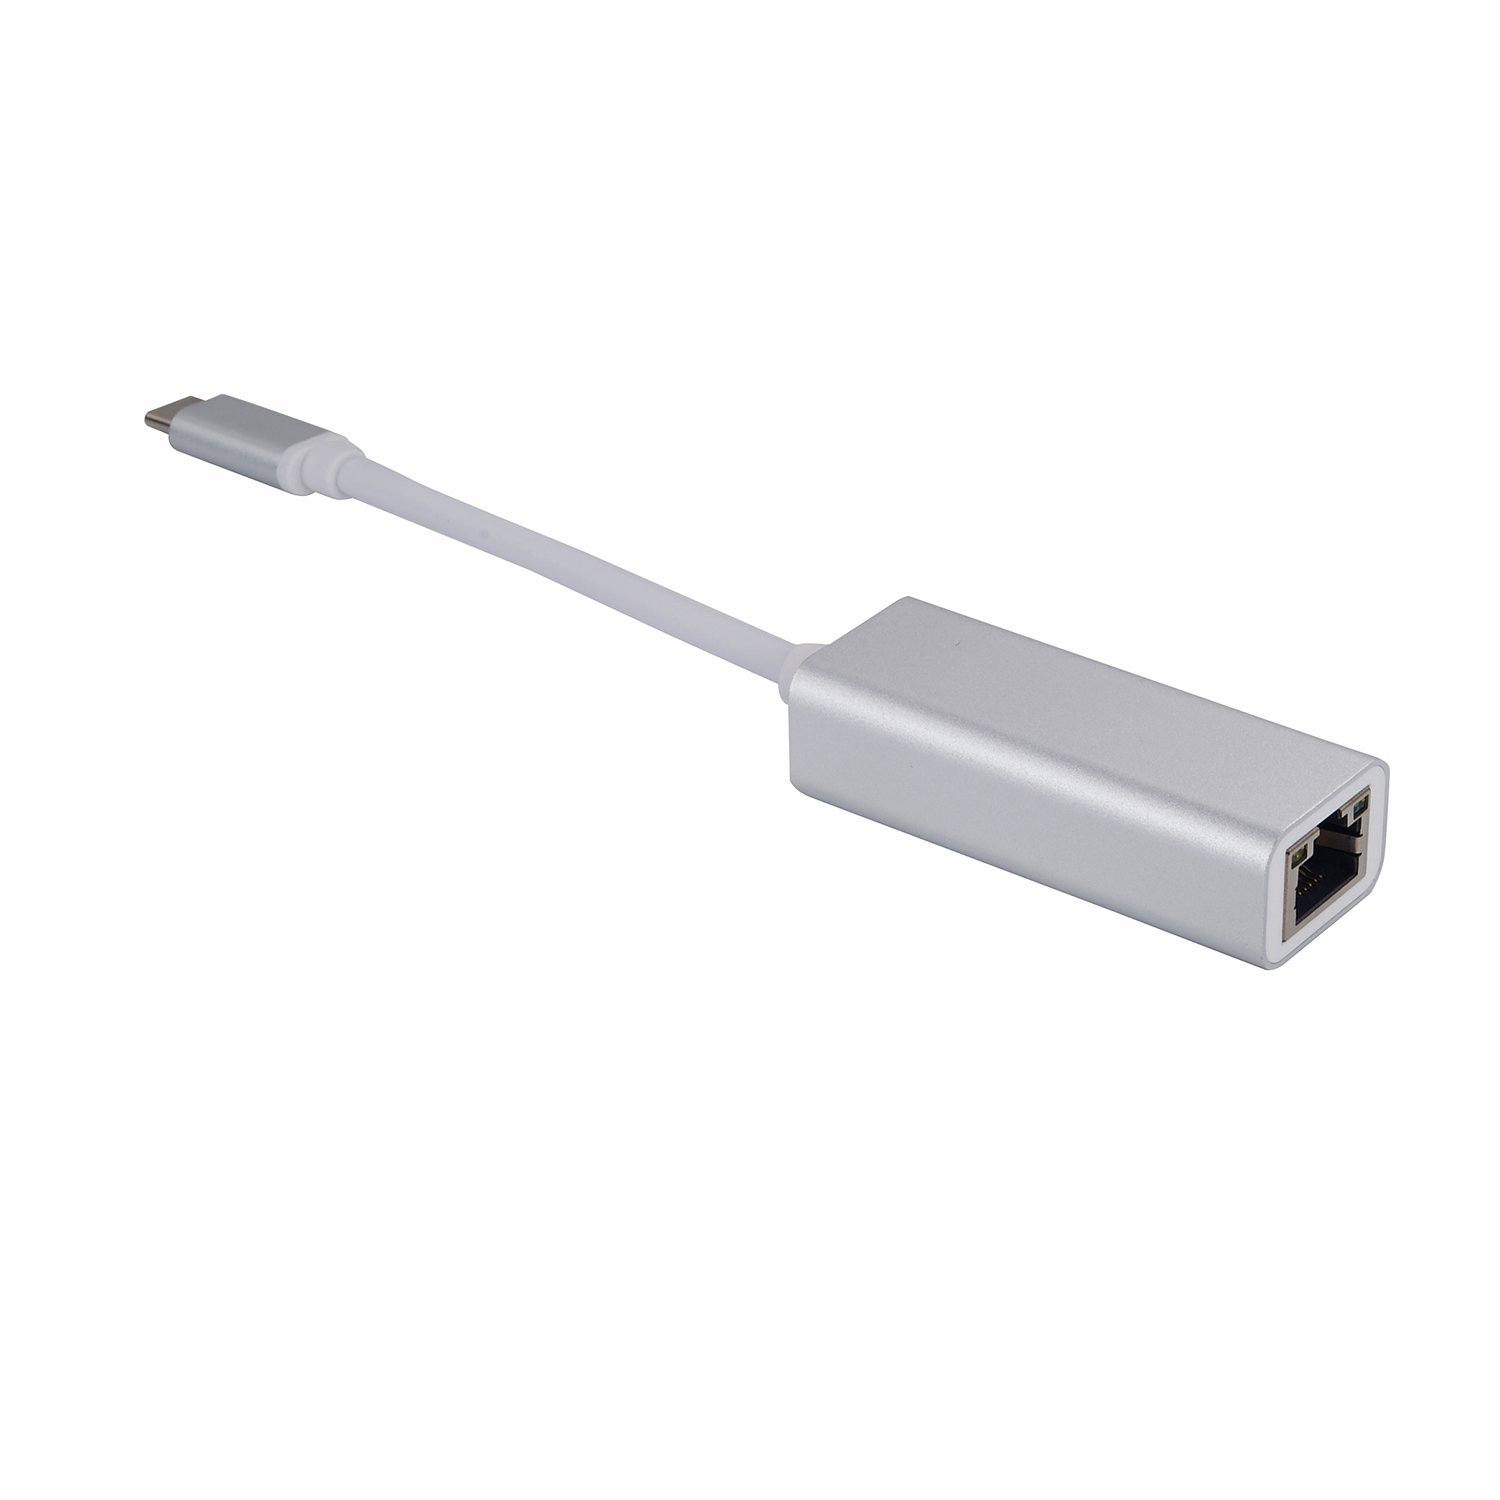 USB C to RJ45 Gigabit Ethernet Lan Adapter